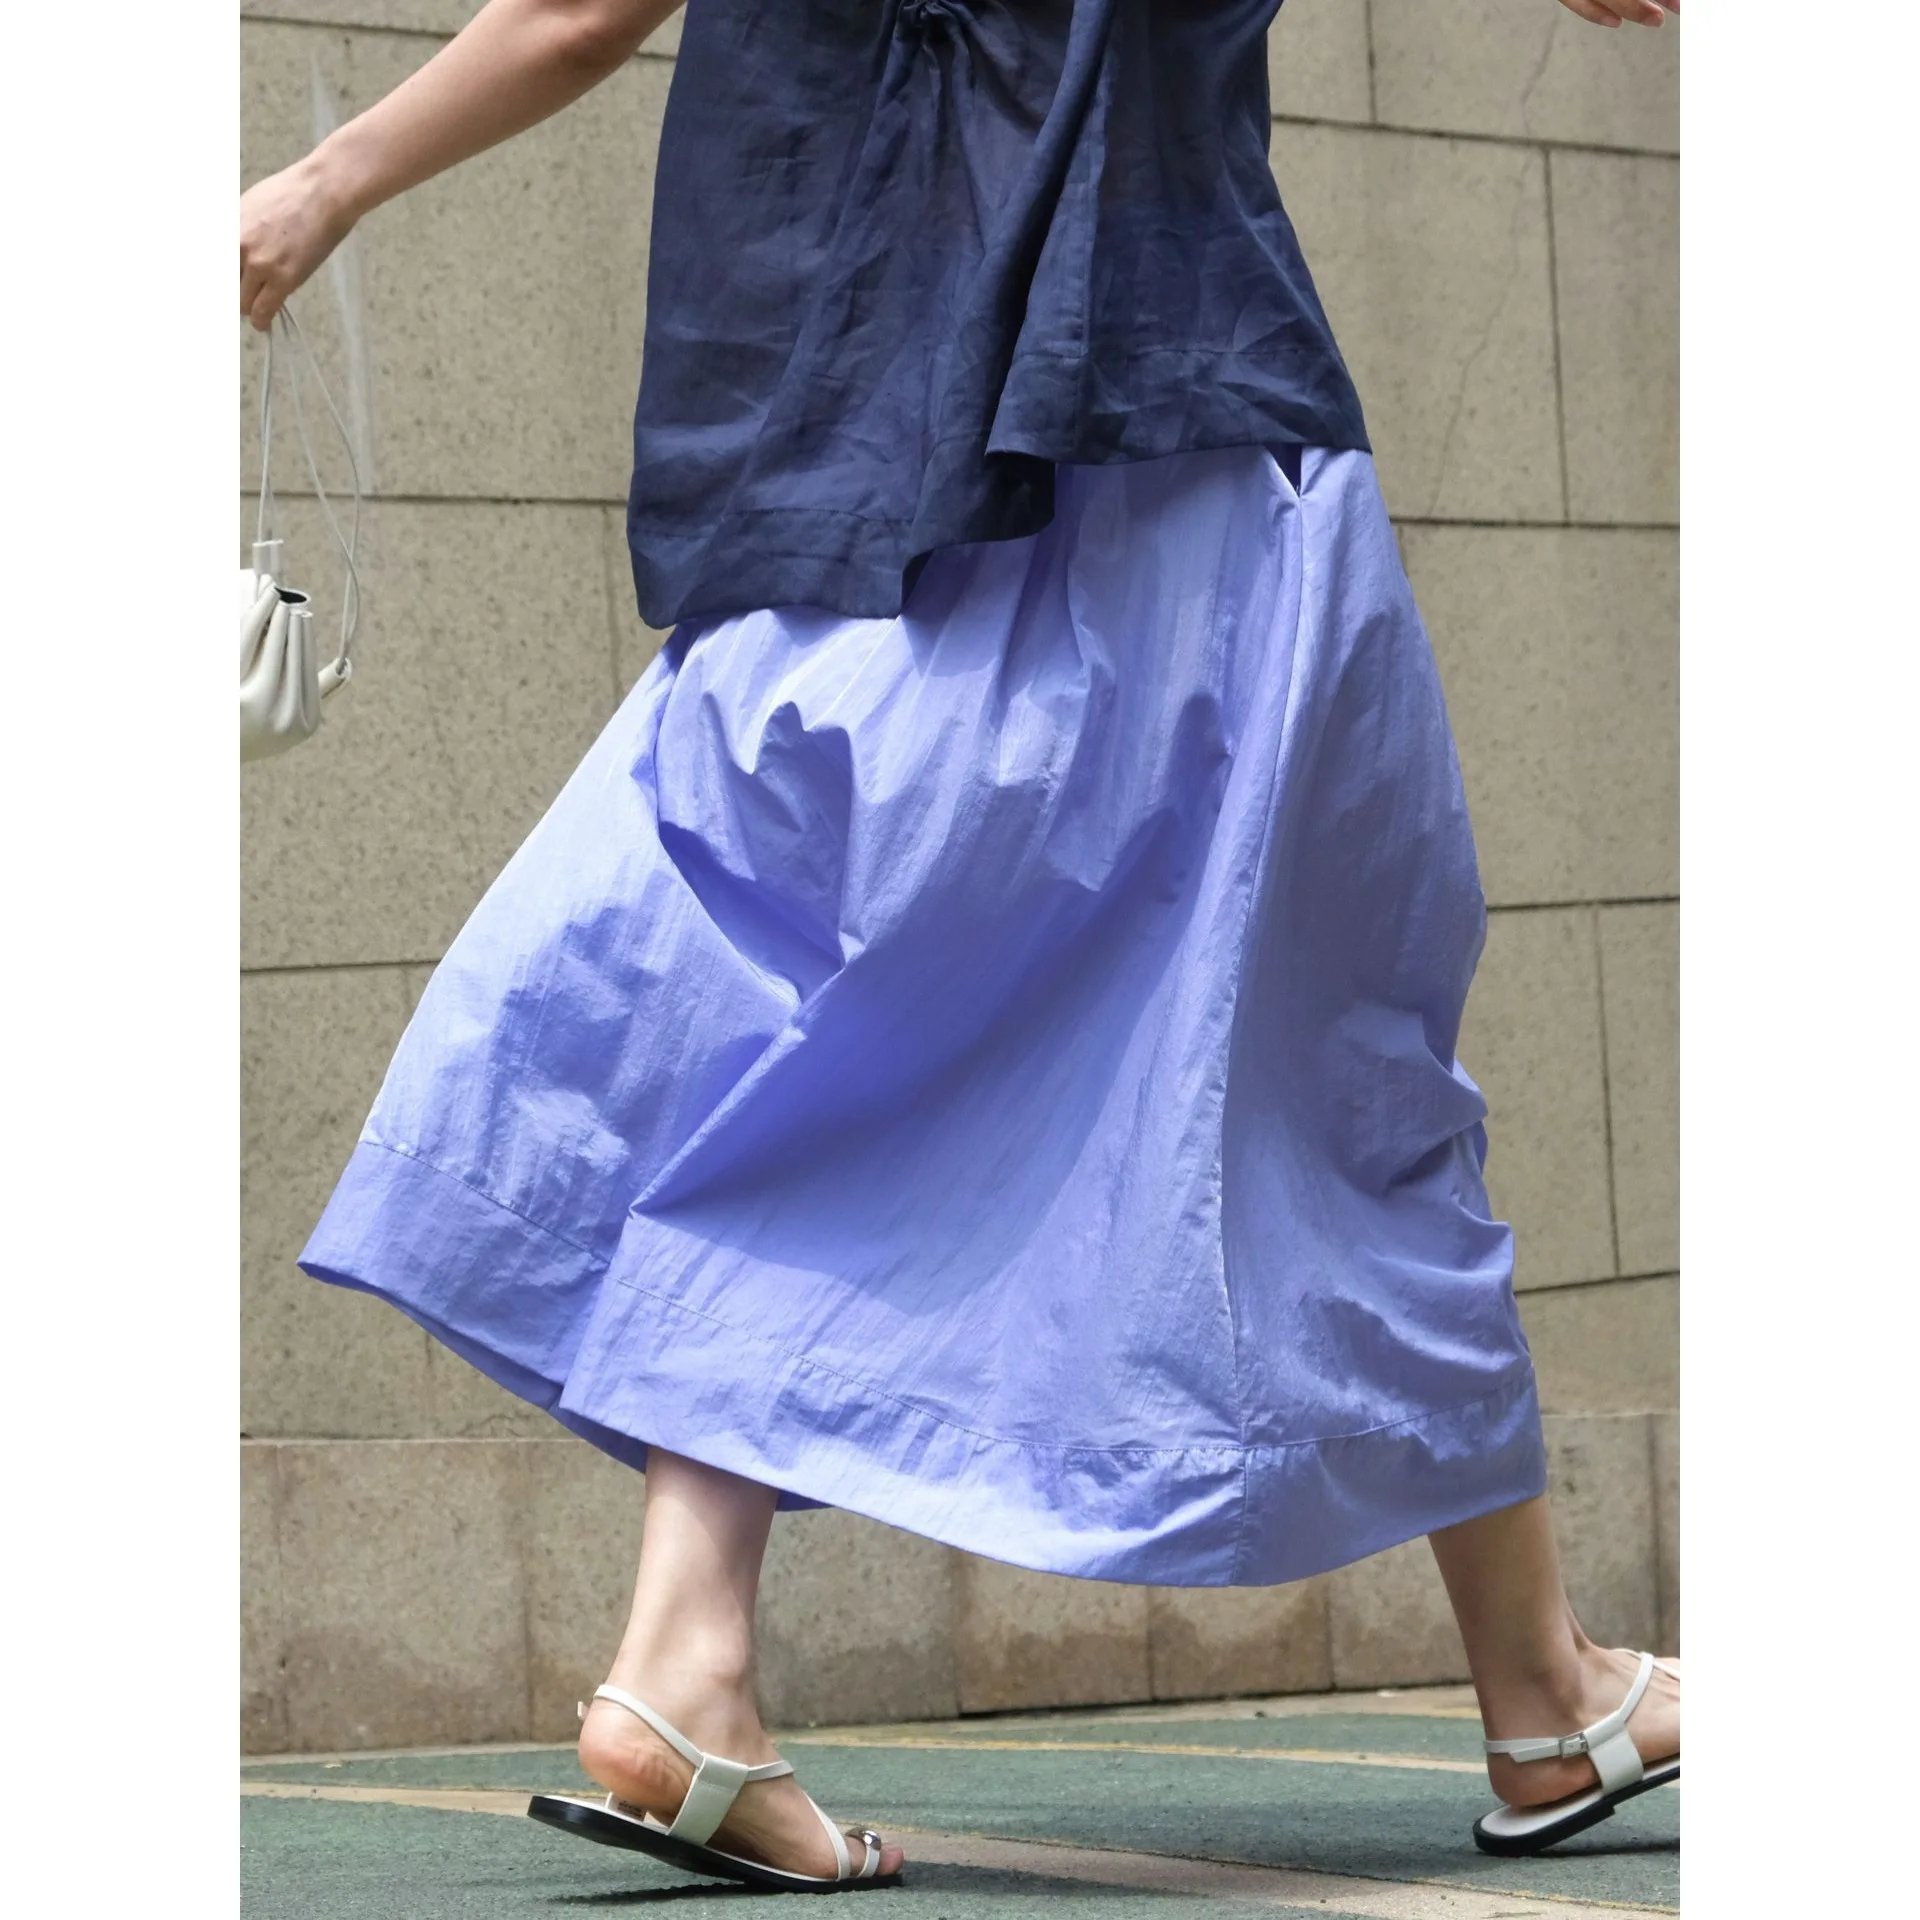 

Summer Gloss High Waist Umbrella Slim A-line Long Smooth Half Skirt for Women